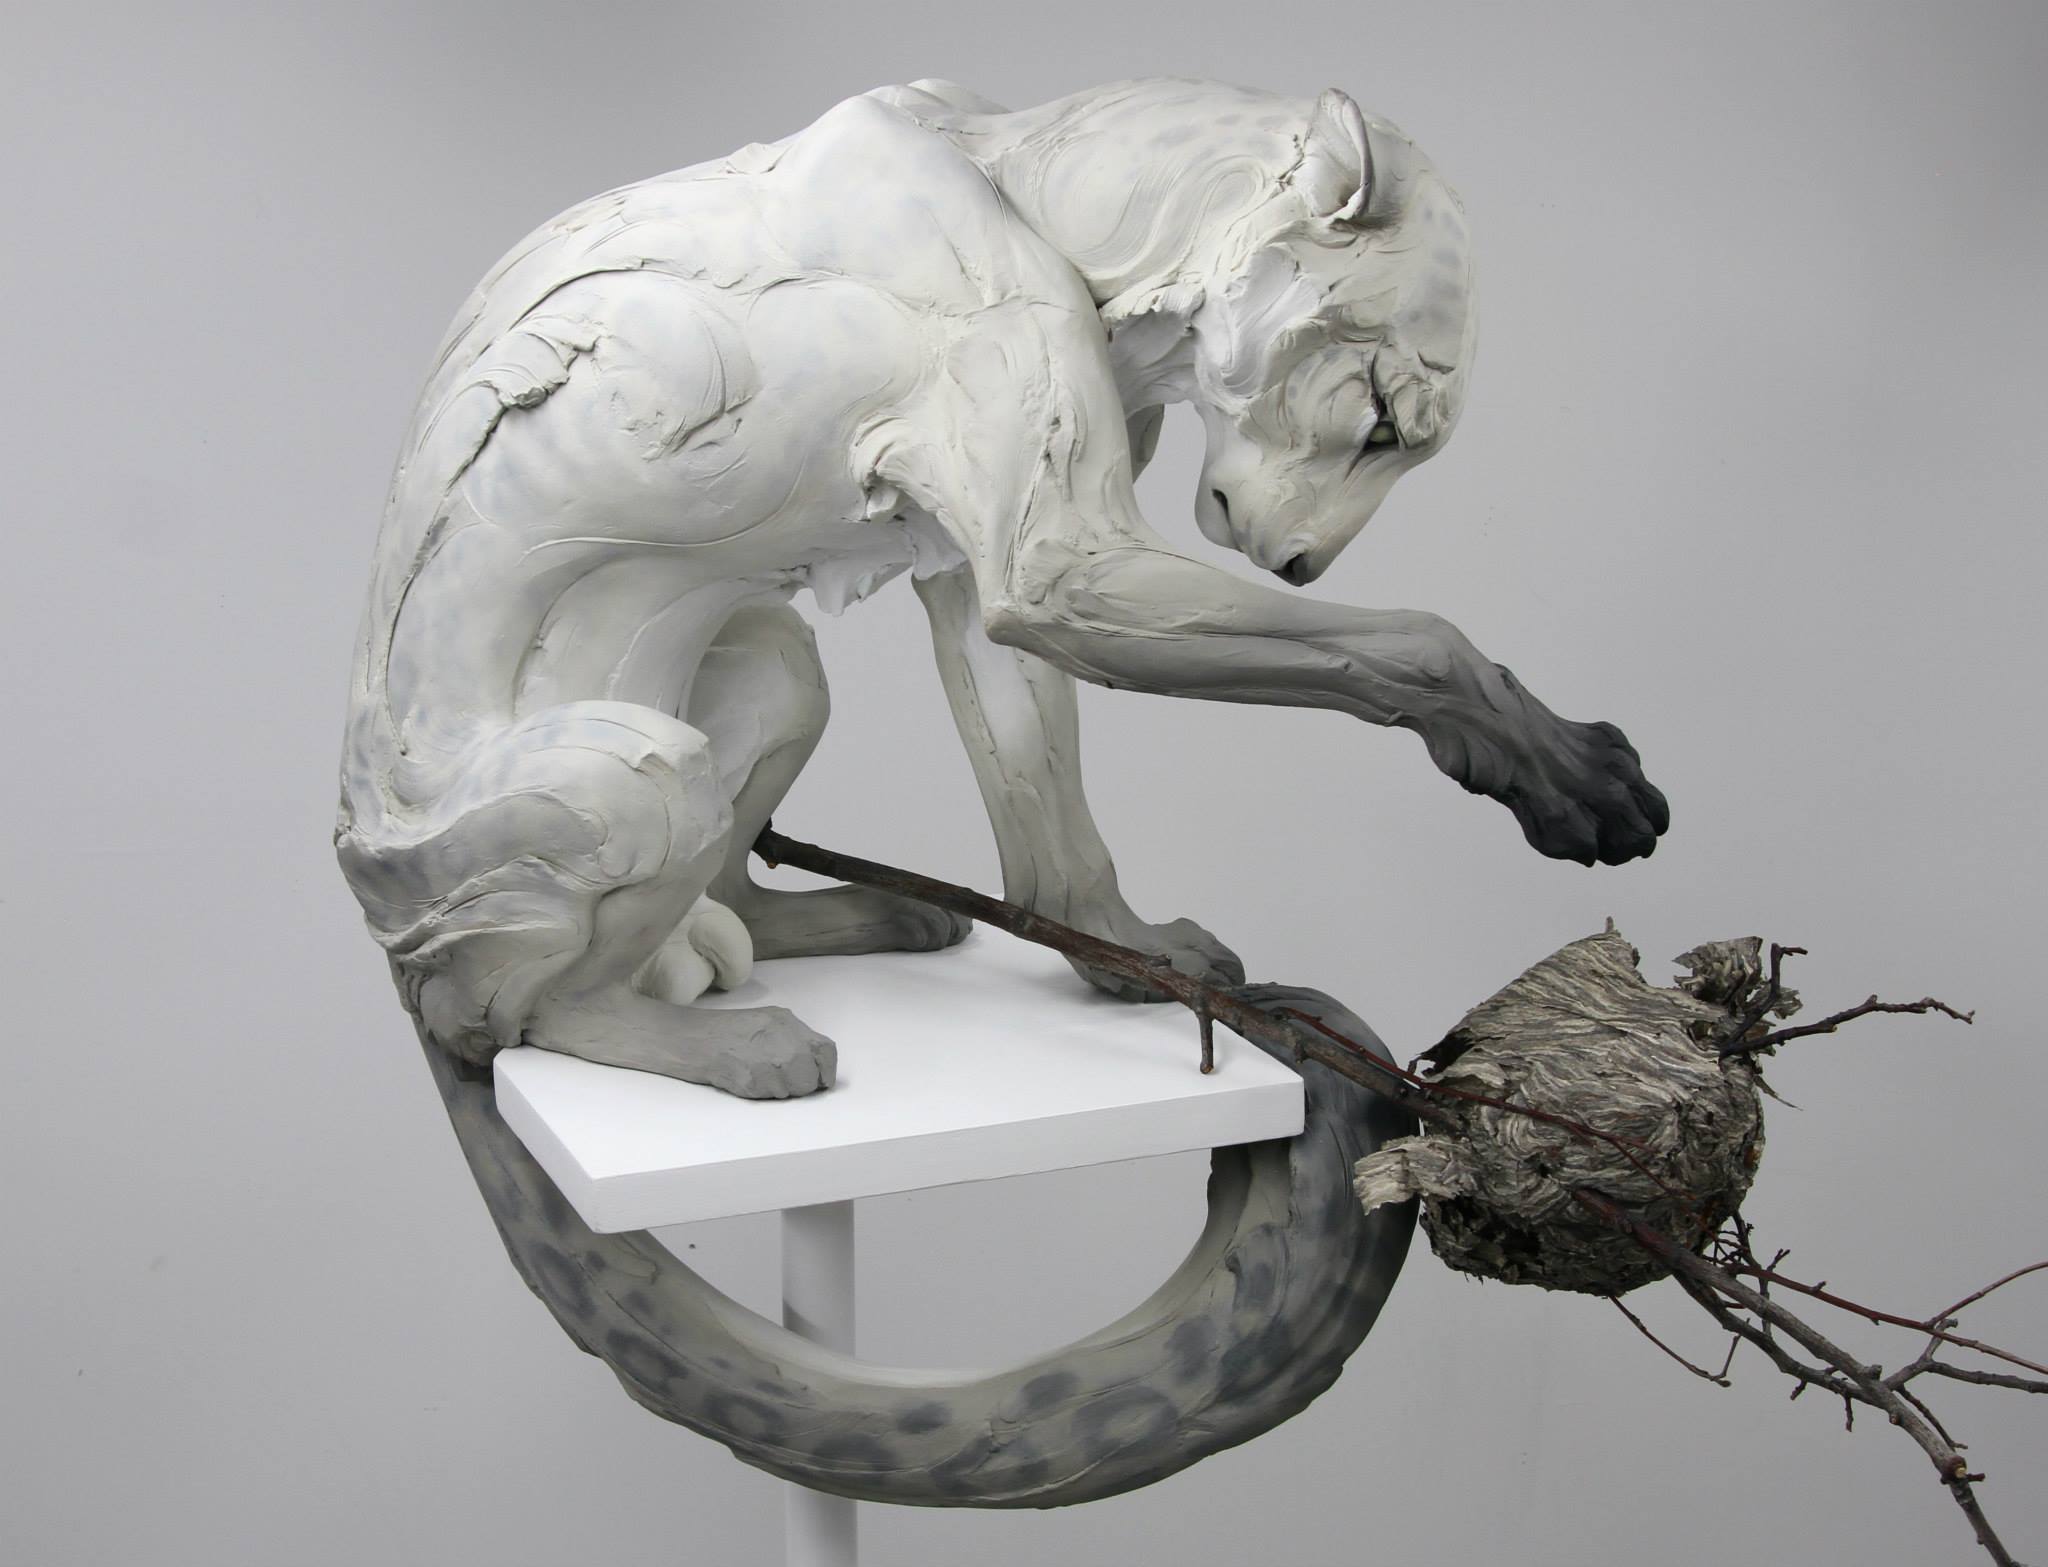 Beth Cavener – “Forgiveness” sculptures